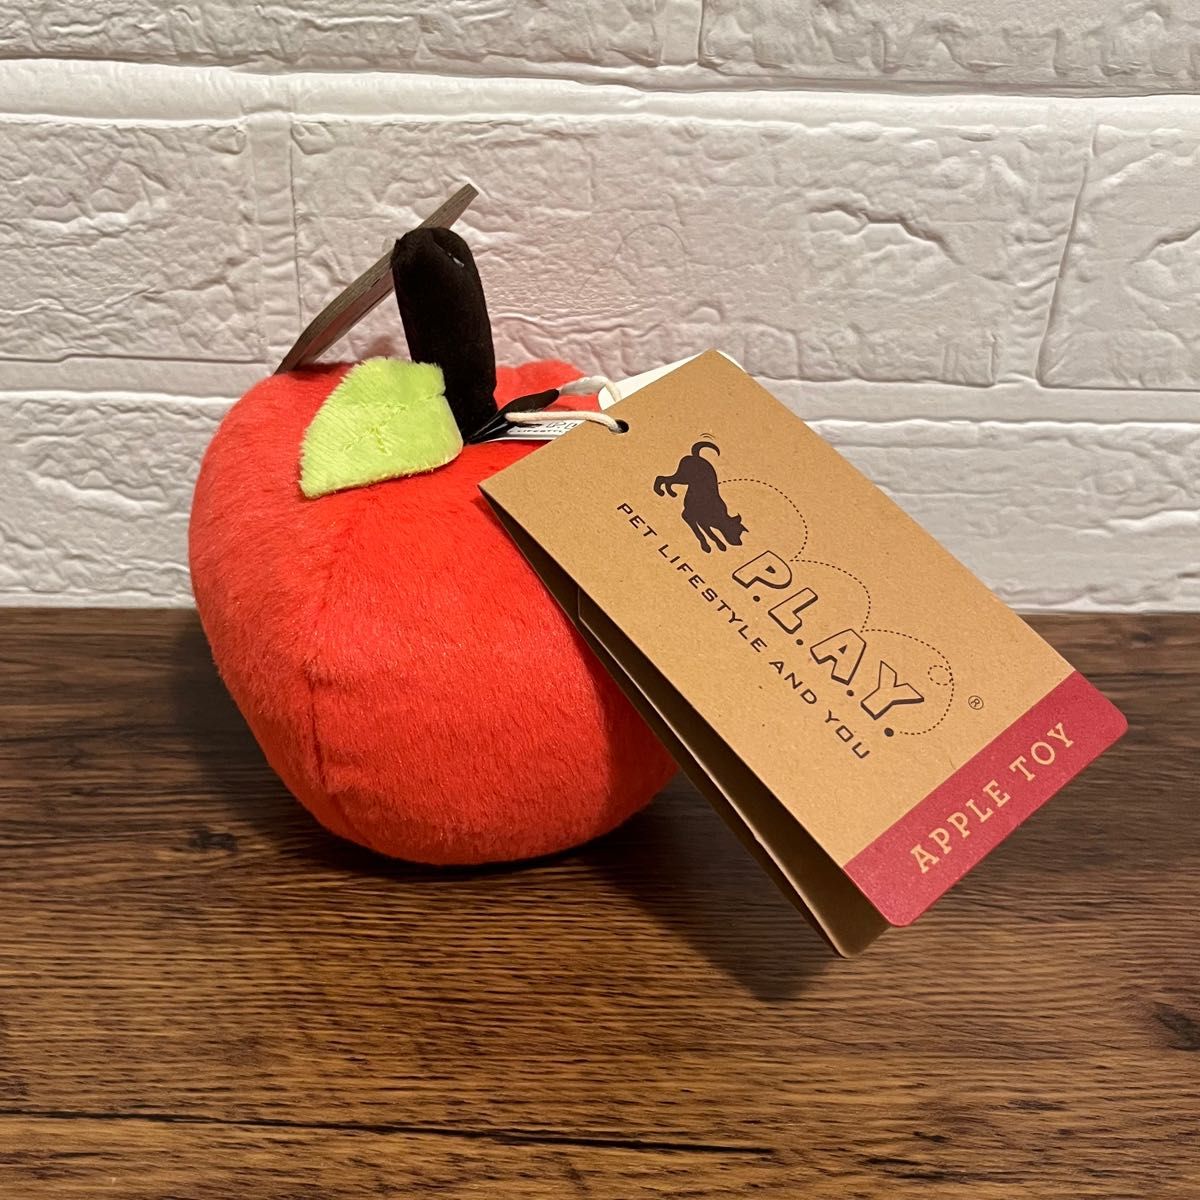 P.L.A.Y. 犬用おもちゃ アップル 新品 プレイ ドッグトイ りんご フルーツ ぬいぐるみ 音の鳴るおもちゃ